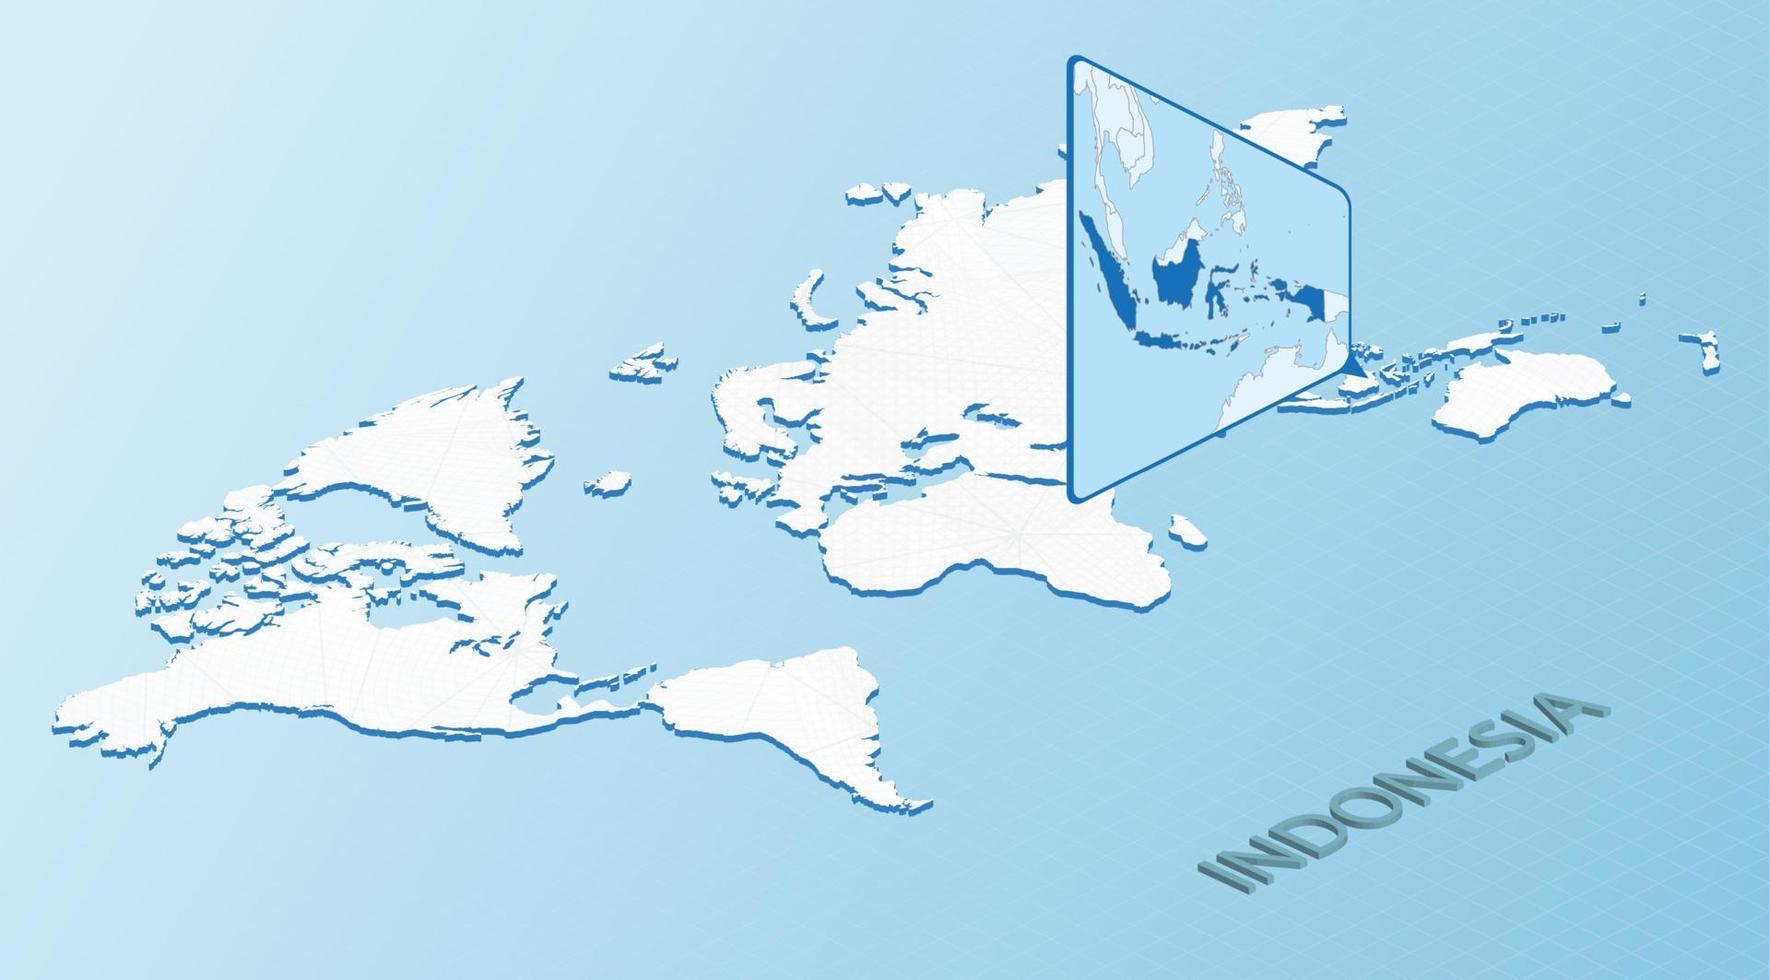 mondo carta geografica nel isometrico stile con dettagliato carta geografica di Indonesia. leggero blu Indonesia carta geografica con astratto mondo carta geografica. vettore